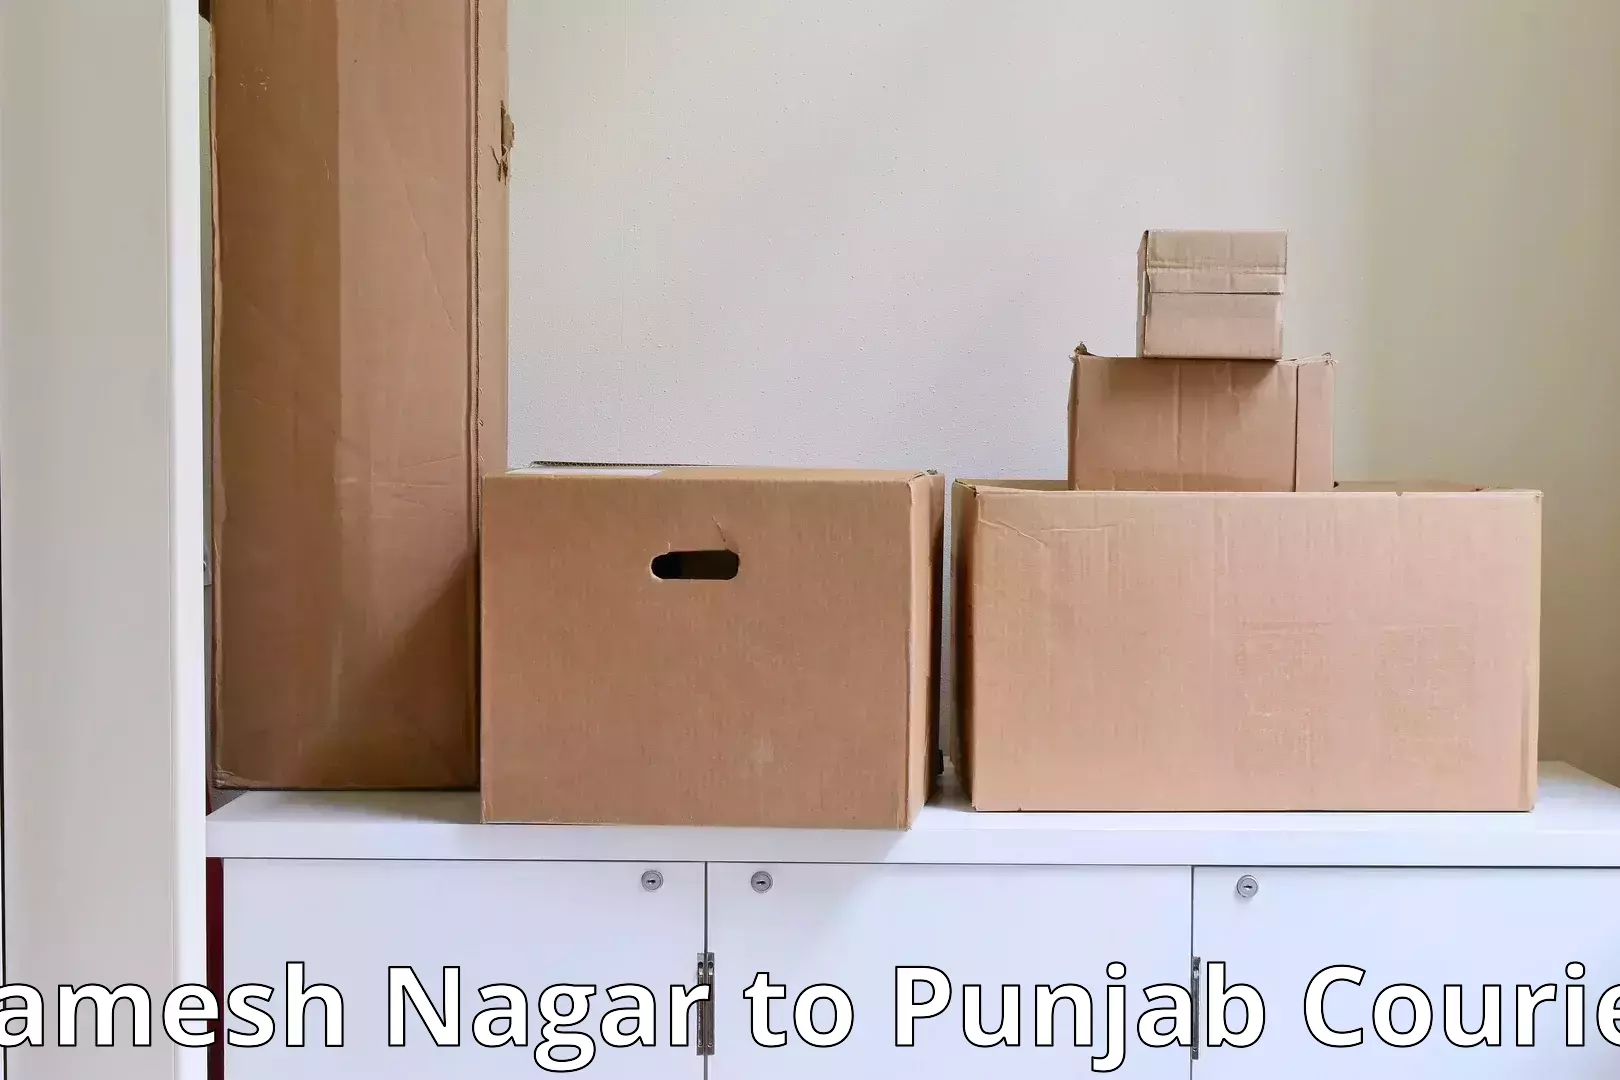 Residential furniture transport Ramesh Nagar to Sultanpur Lodhi